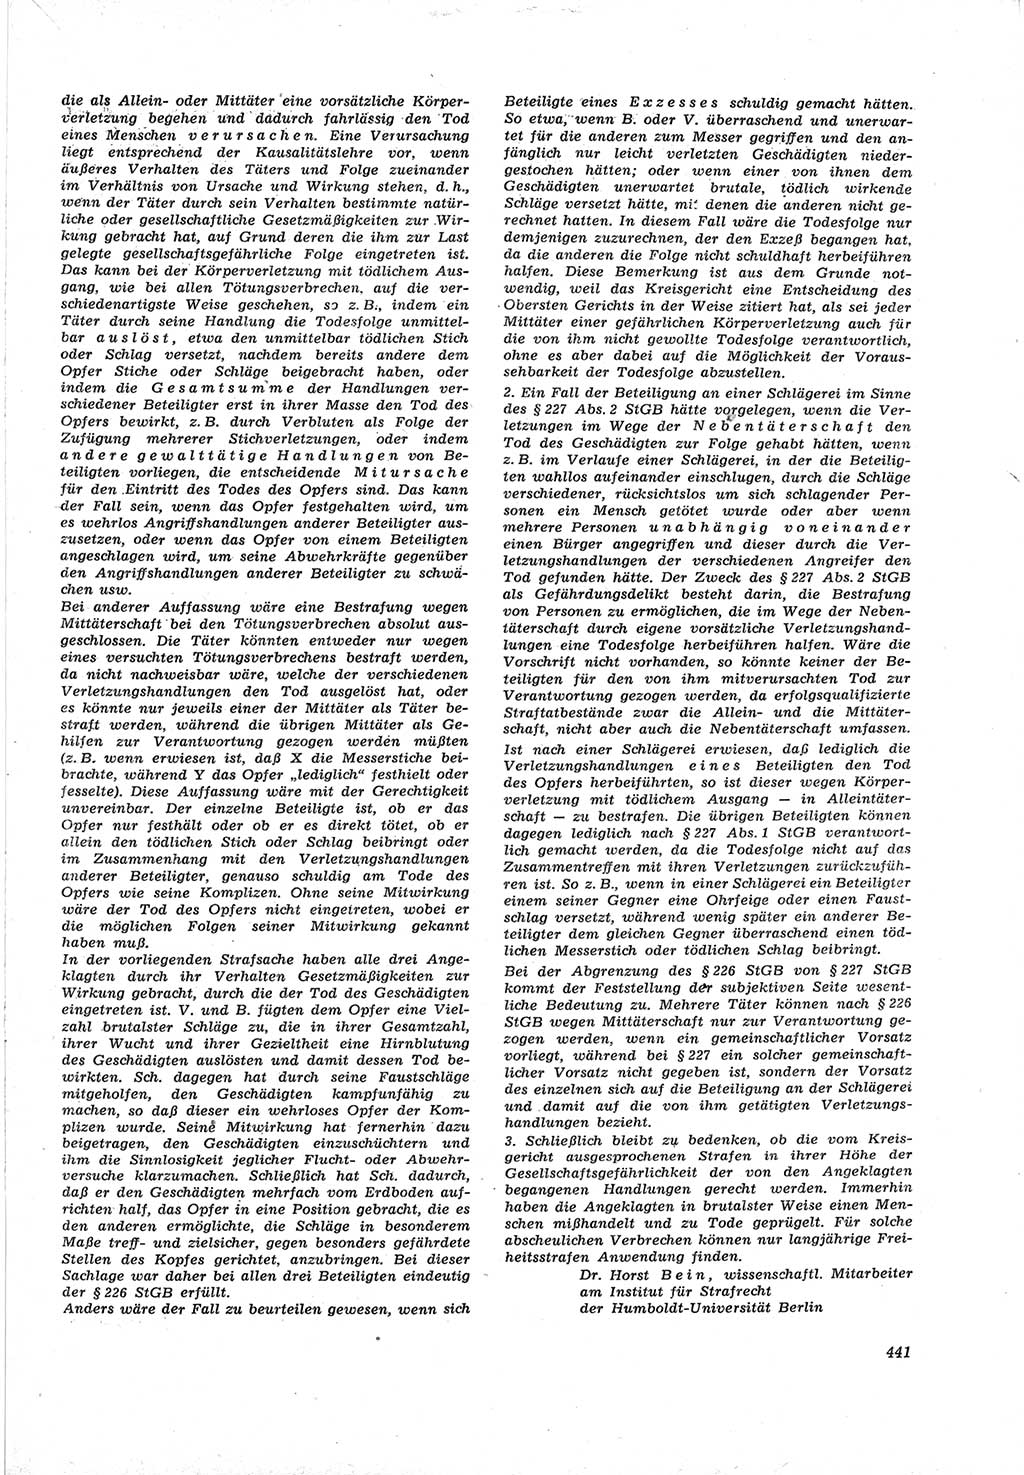 Neue Justiz (NJ), Zeitschrift für Recht und Rechtswissenschaft [Deutsche Demokratische Republik (DDR)], 17. Jahrgang 1963, Seite 441 (NJ DDR 1963, S. 441)